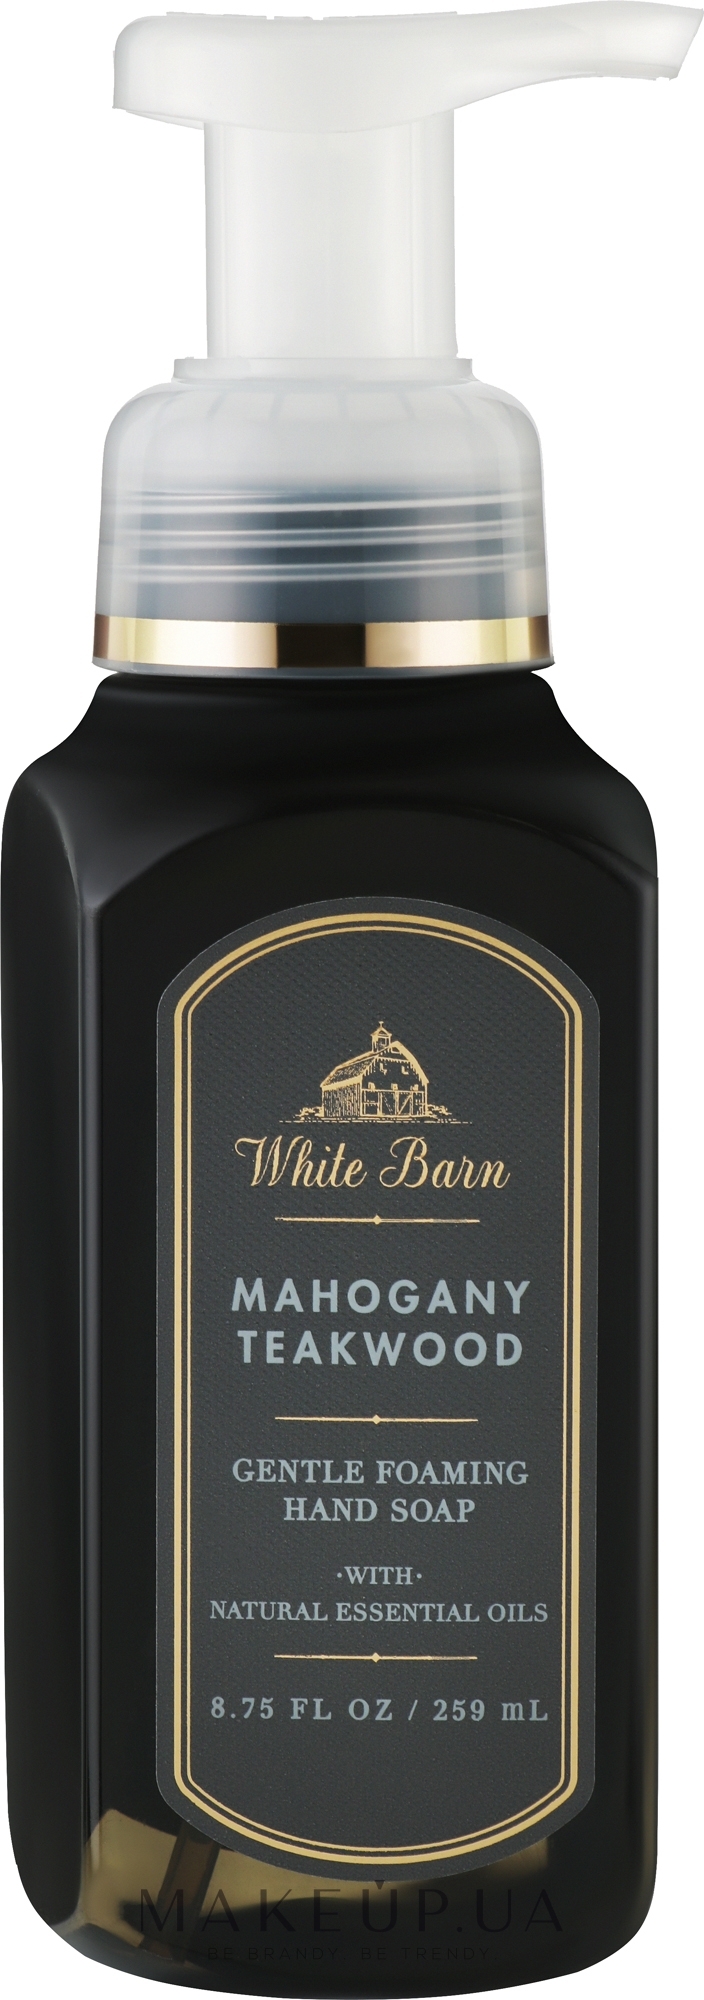 Мыло-пена для рук "Mahogany Teakwood" - Bath and Body Works White Barn Mahogany Teakwood Gentle Foaming Hand Soap — фото 259ml